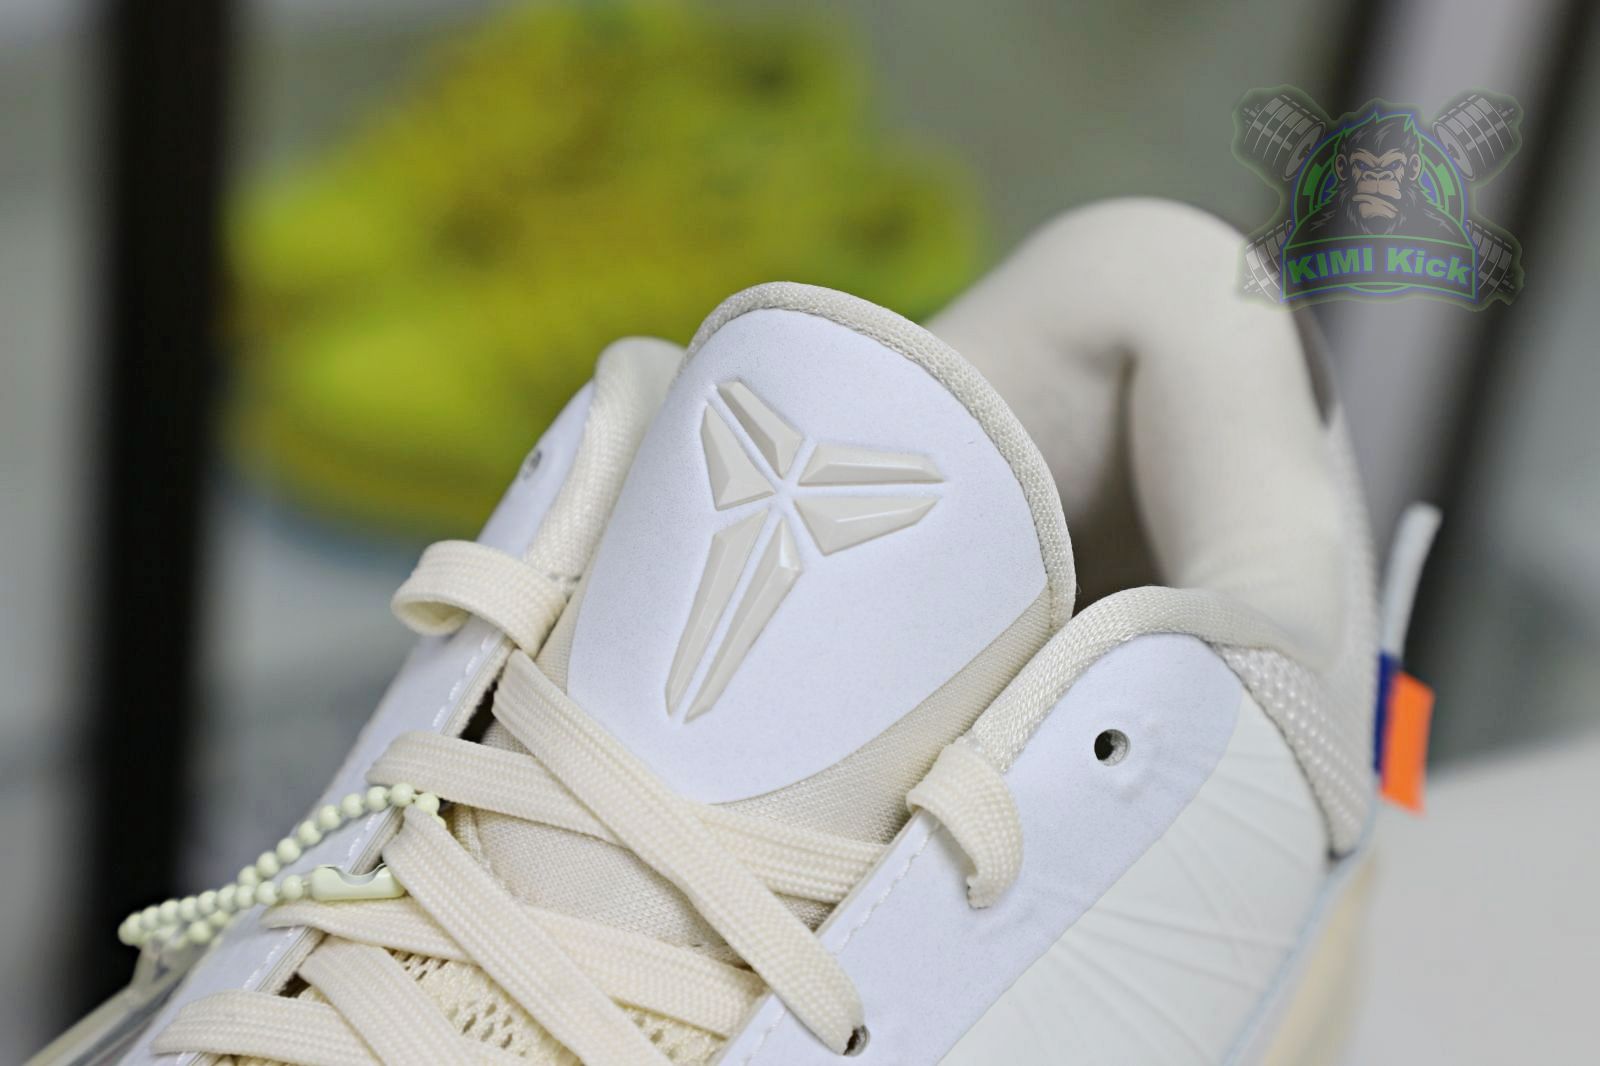 OFF-WHITEX Nike Zoom Kobe5